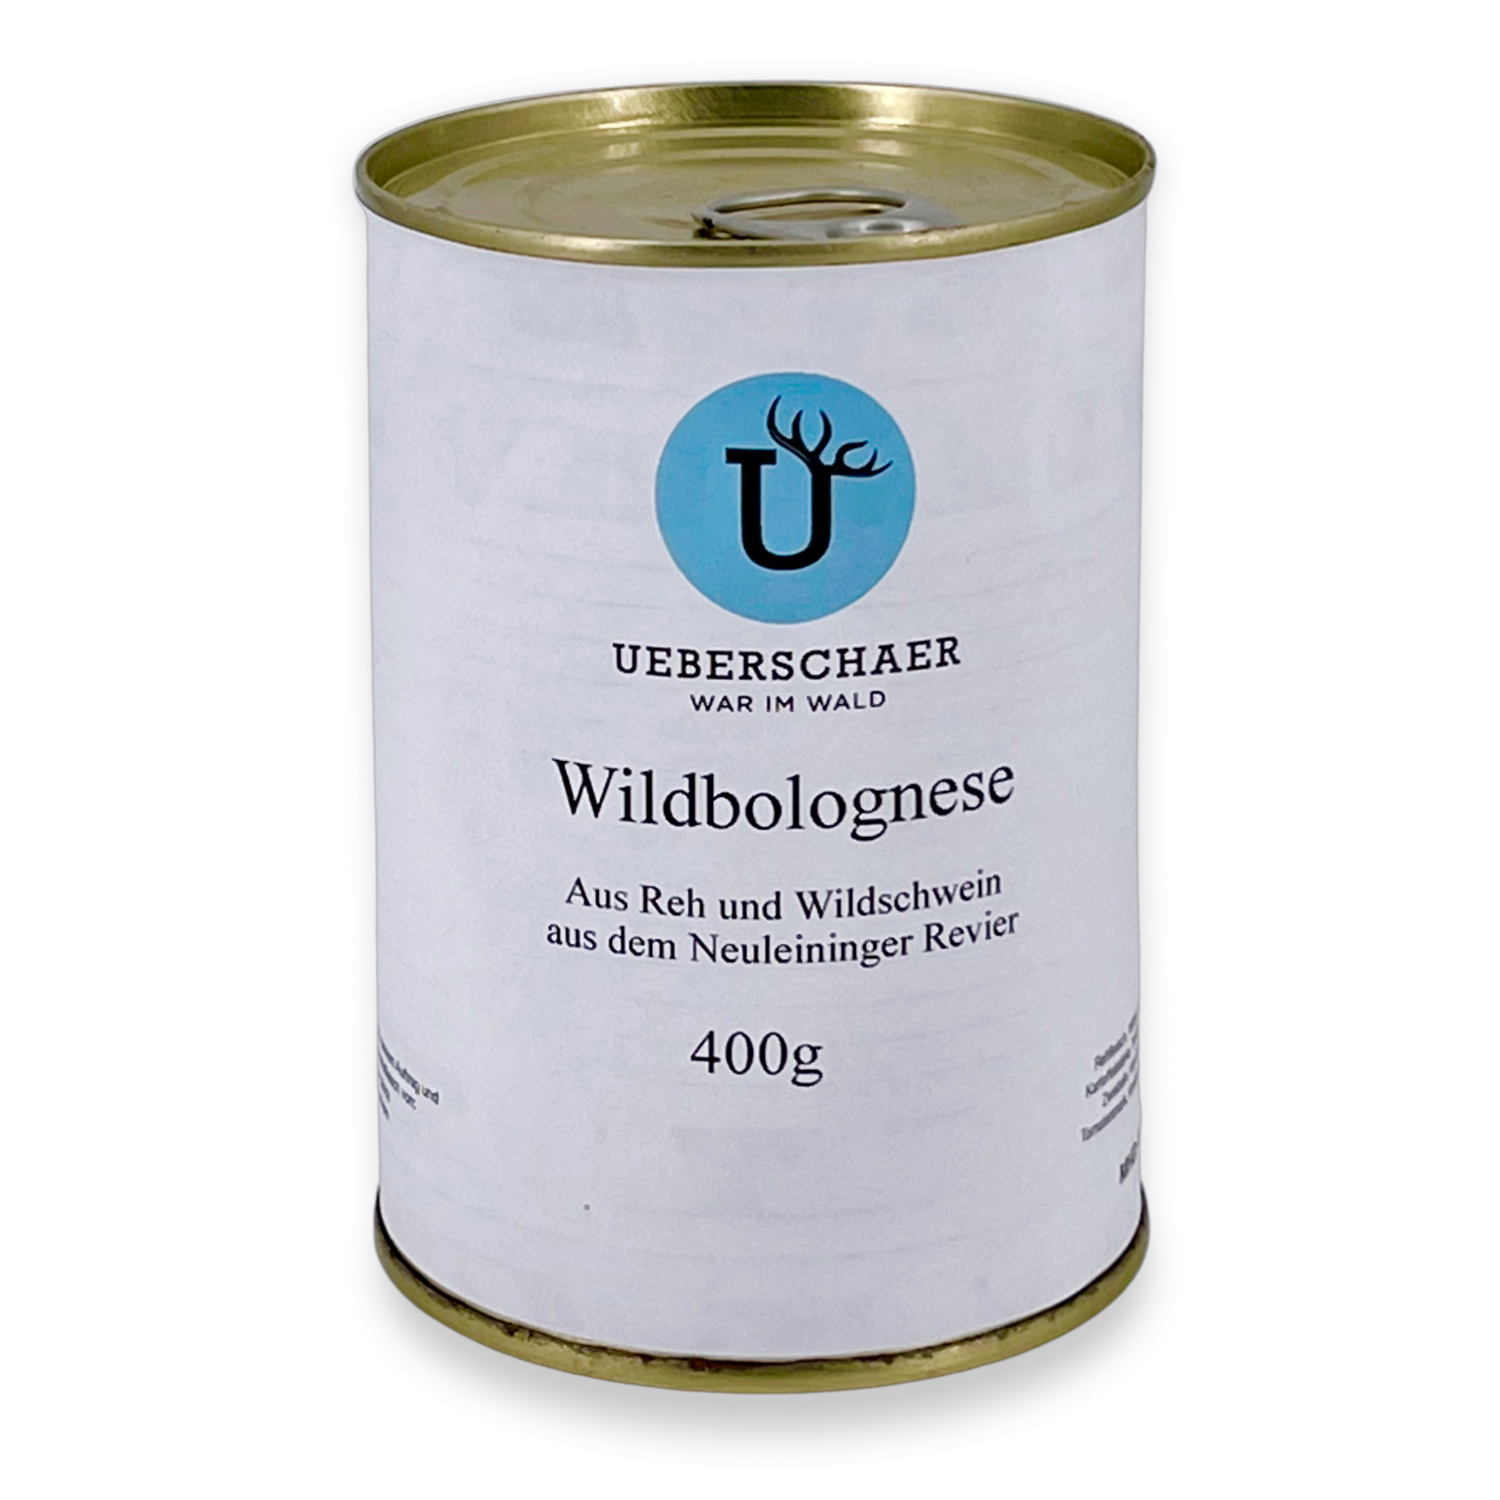 Ueberschaer's Wildbolognese